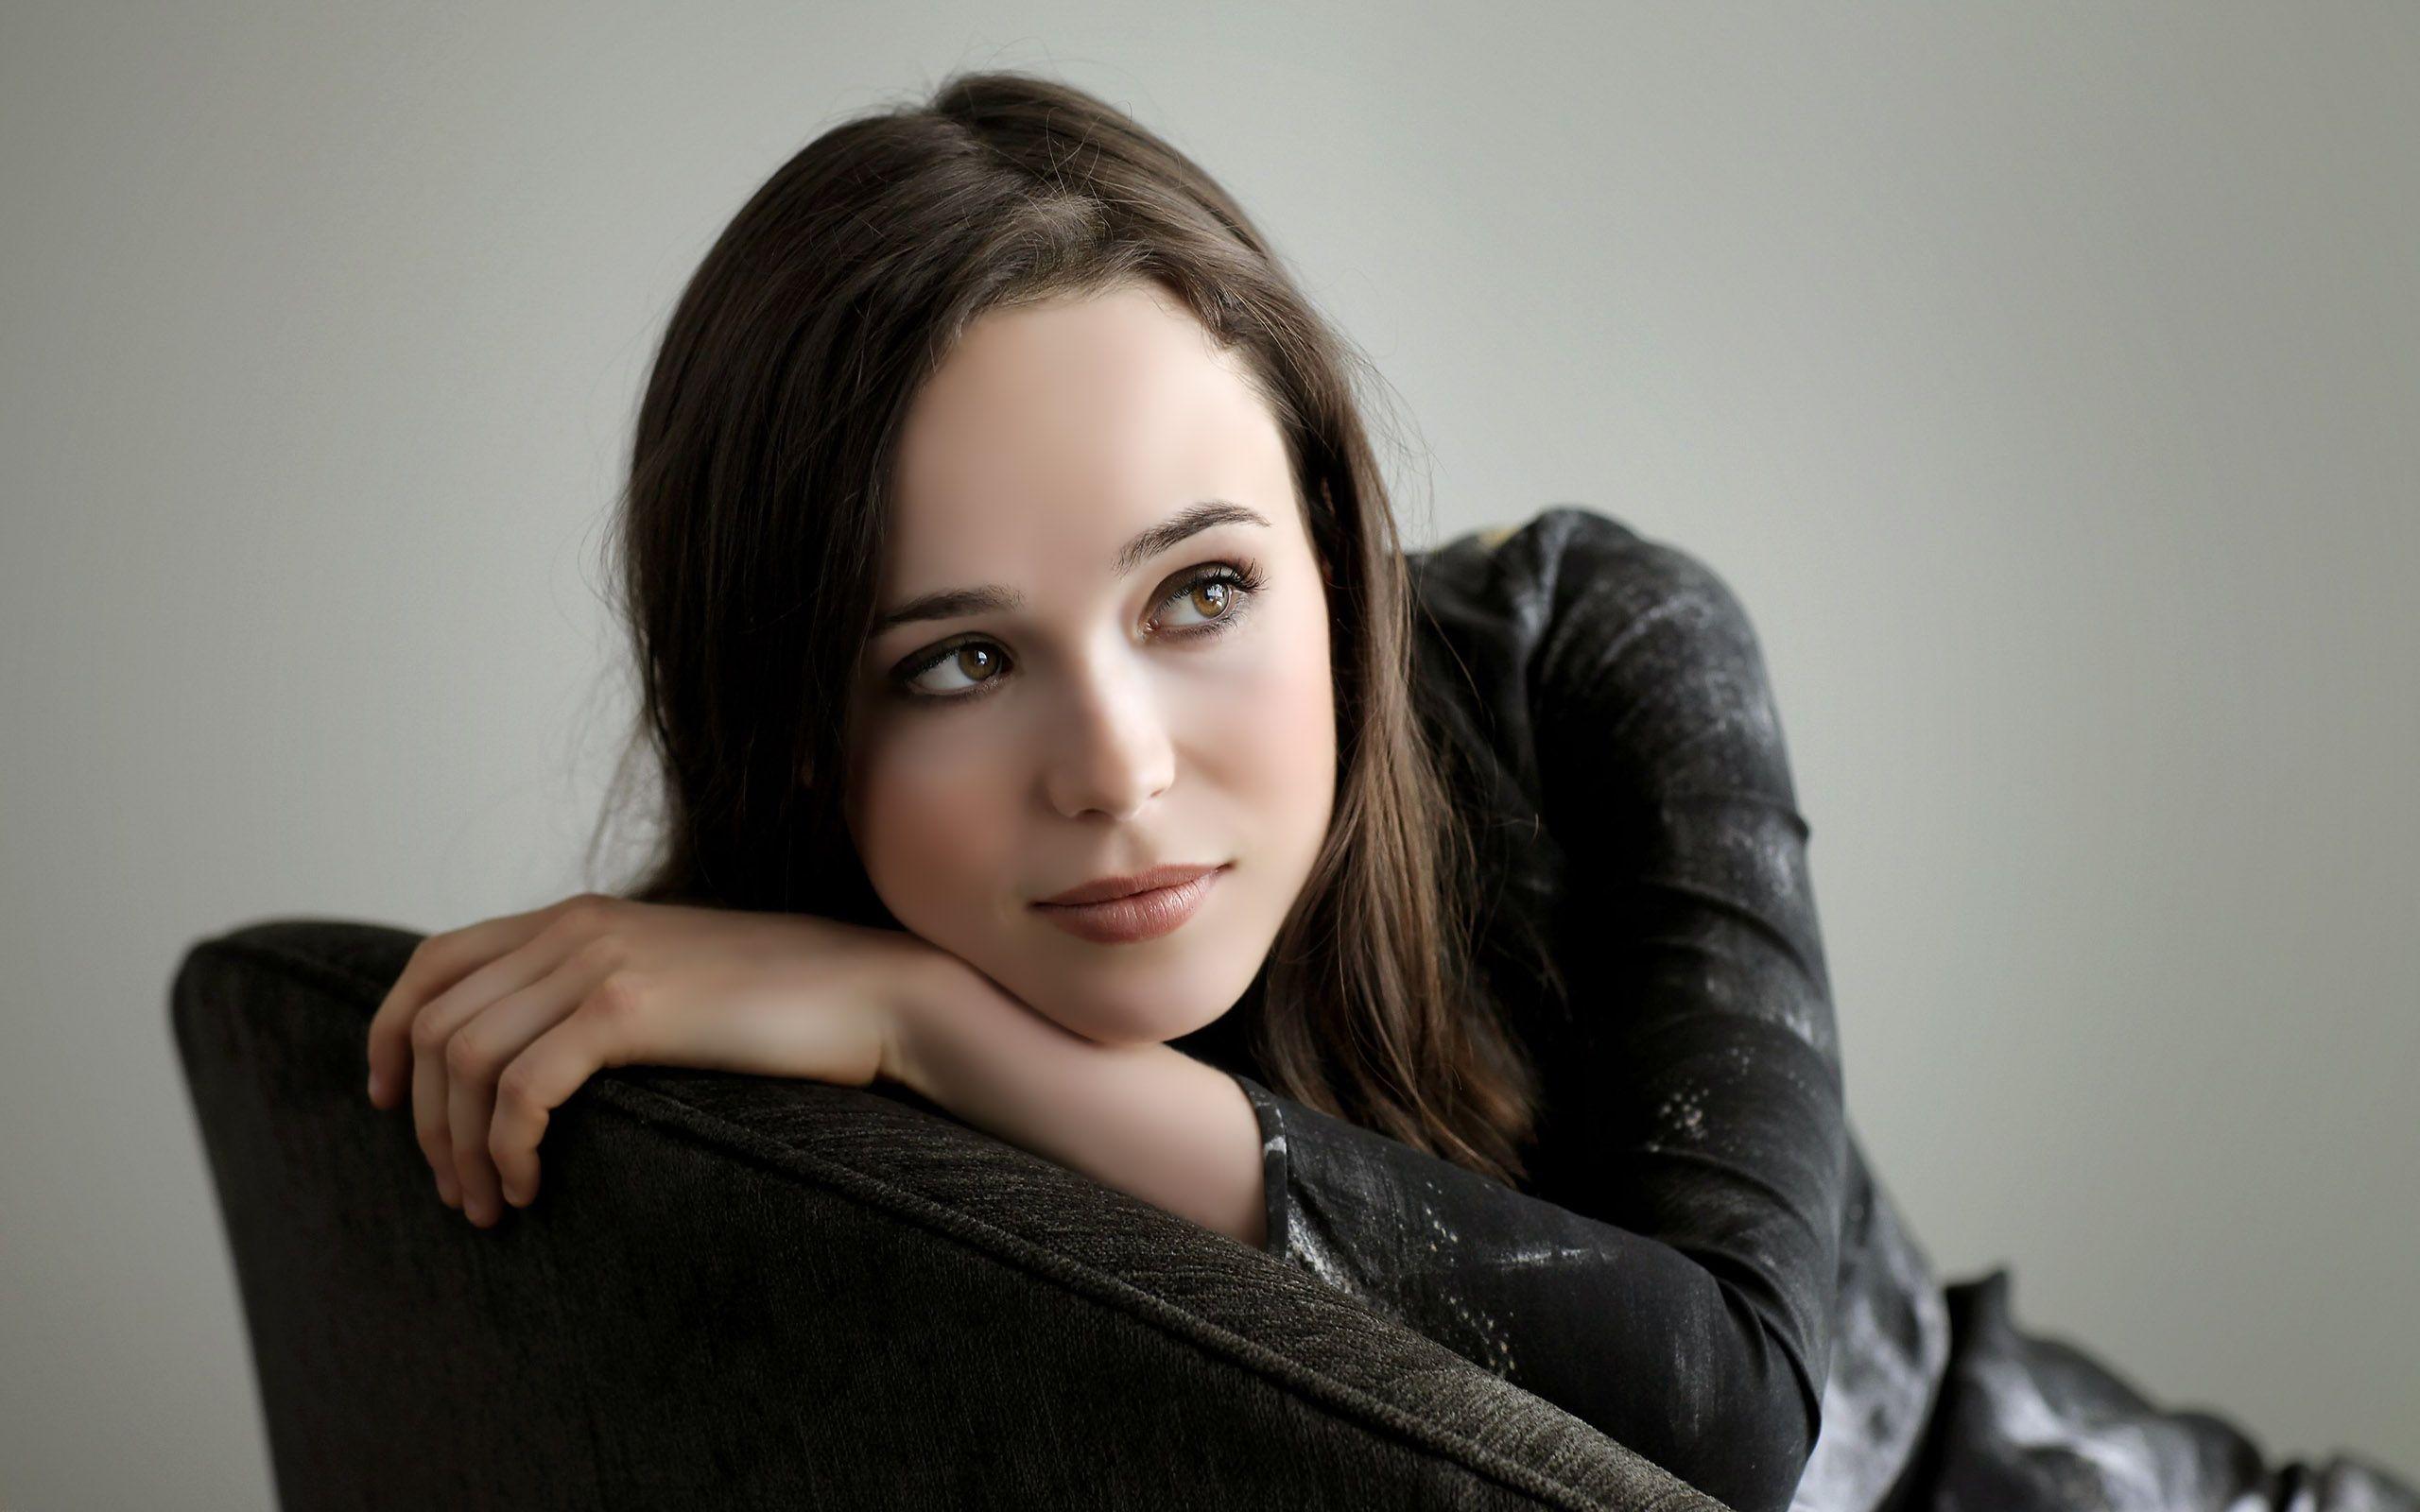 Ellen Page Hd Image 3. Ellen Page HD Image. HD